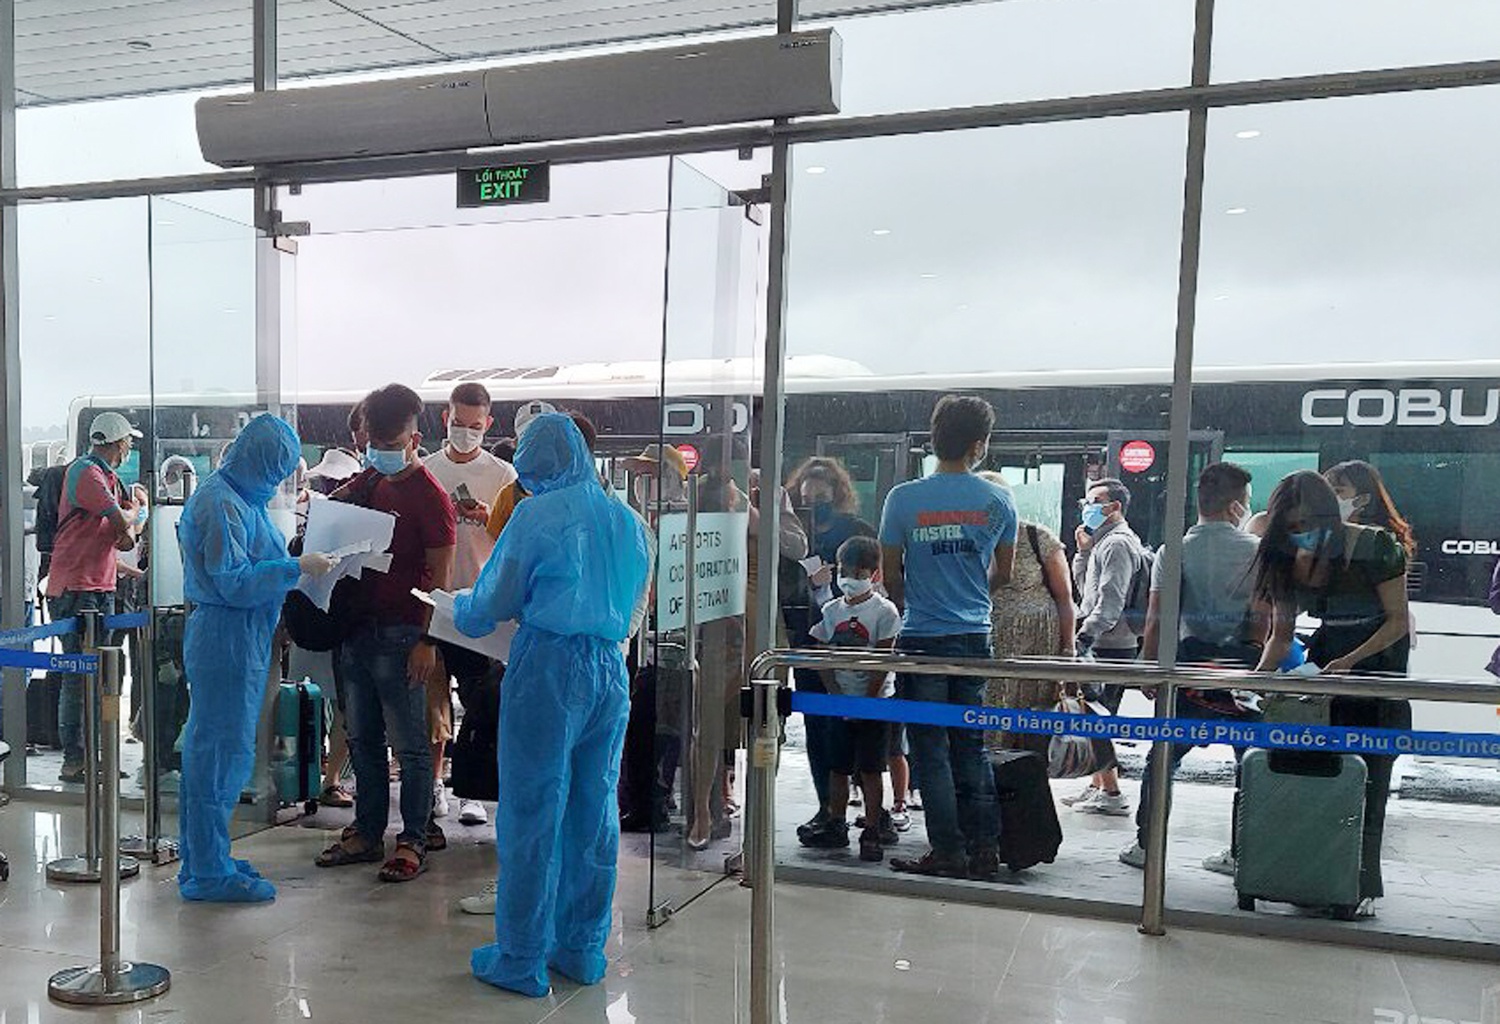 Dung chuyen bay tu TP.HCM ra Phu Quoc anh 1  - phu_quoc - Tạm dừng các chuyến bay từ TP.HCM đến Phú Quốc